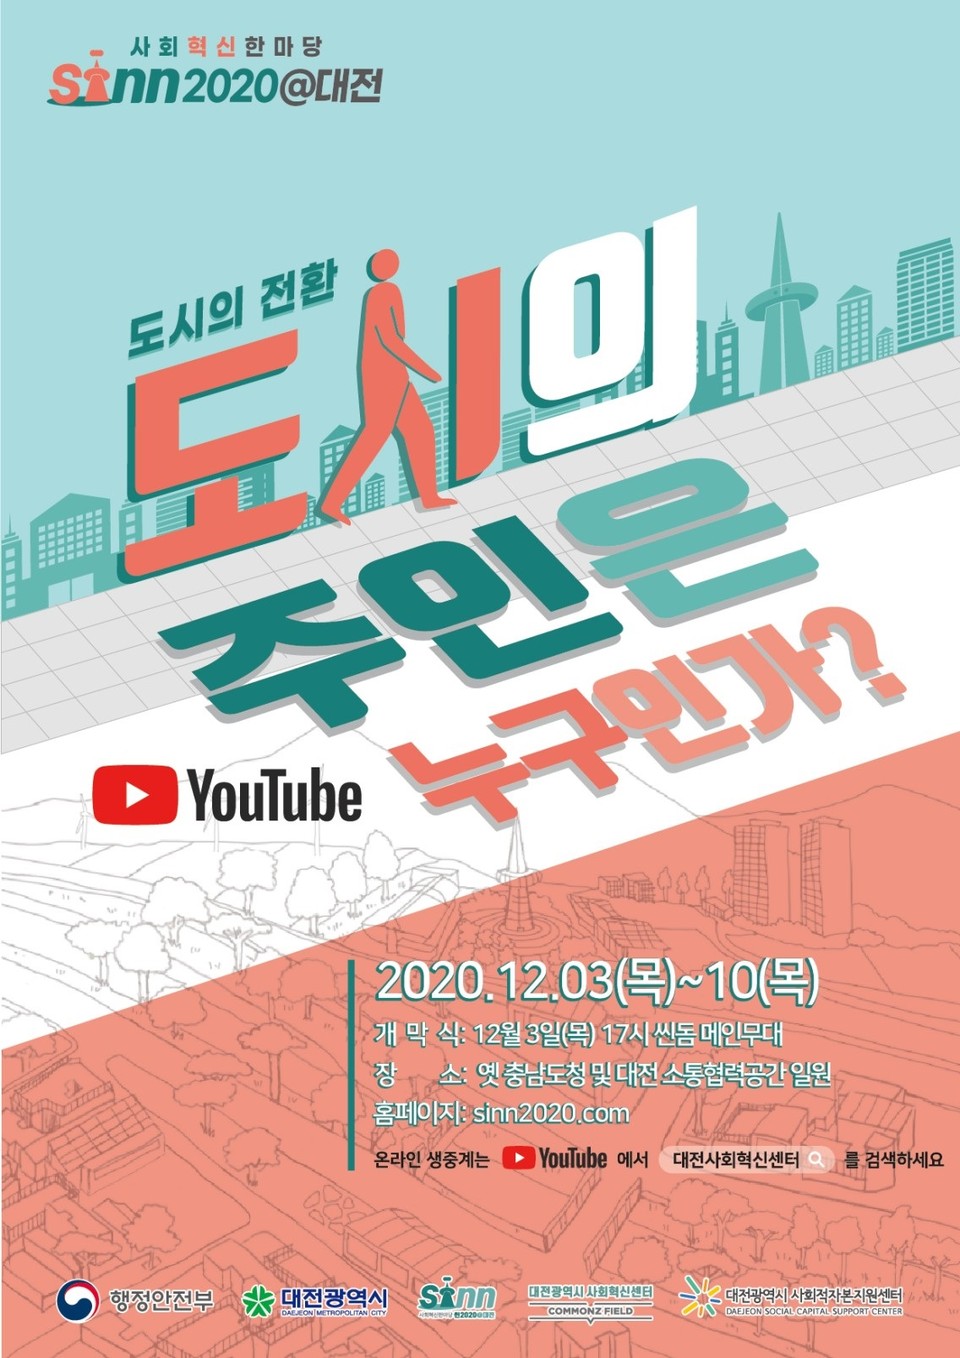 대전시는 지역거점별 소통협력공간 조성(COMMONZ FIELD 대전) 사업인 '혁신한마당 씬(SINN)2020@대전’온라인 개최 포스터./ⓒ대전시